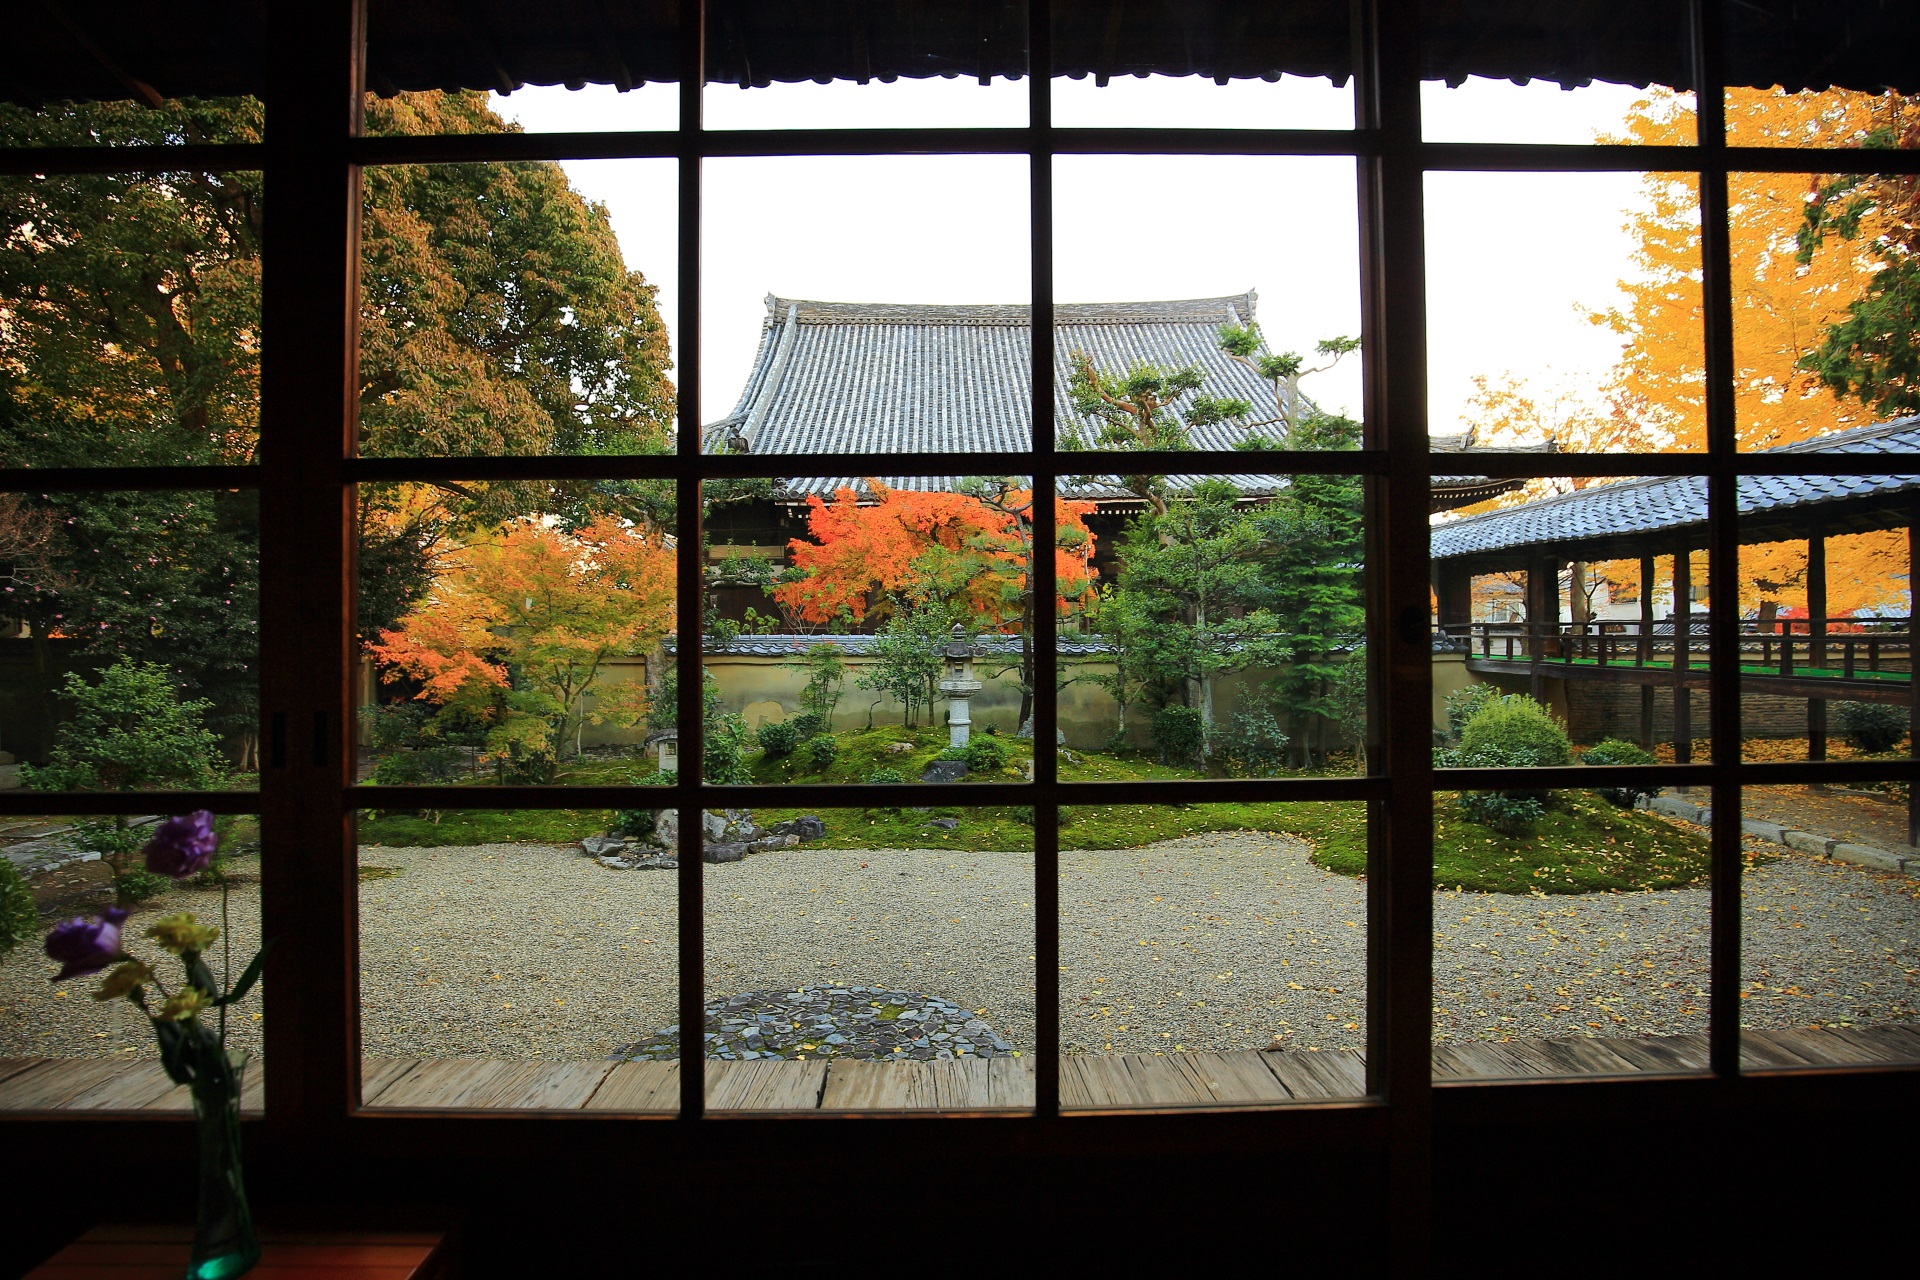 立本寺の客殿から眺めた紅葉に染まる南側の庭園と本堂